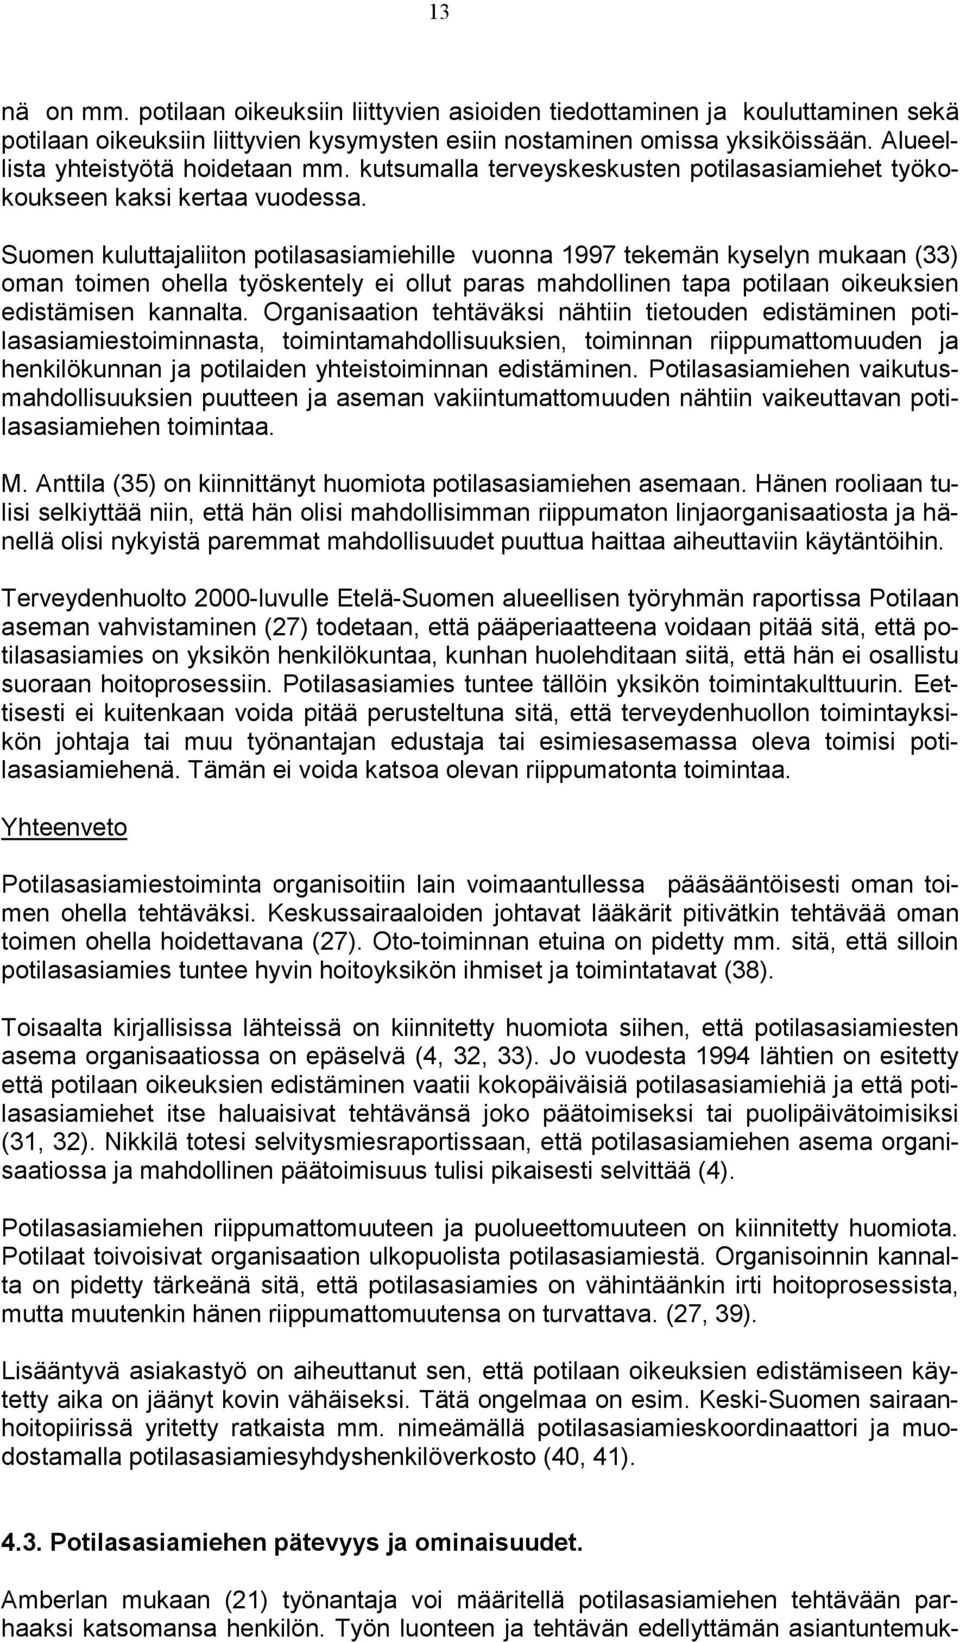 Suomen kuluttajaliiton potilasasiamiehille vuonna 1997 tekemän kyselyn mukaan (33) oman toimen ohella työskentely ei ollut paras mahdollinen tapa potilaan oikeuksien edistämisen kannalta.